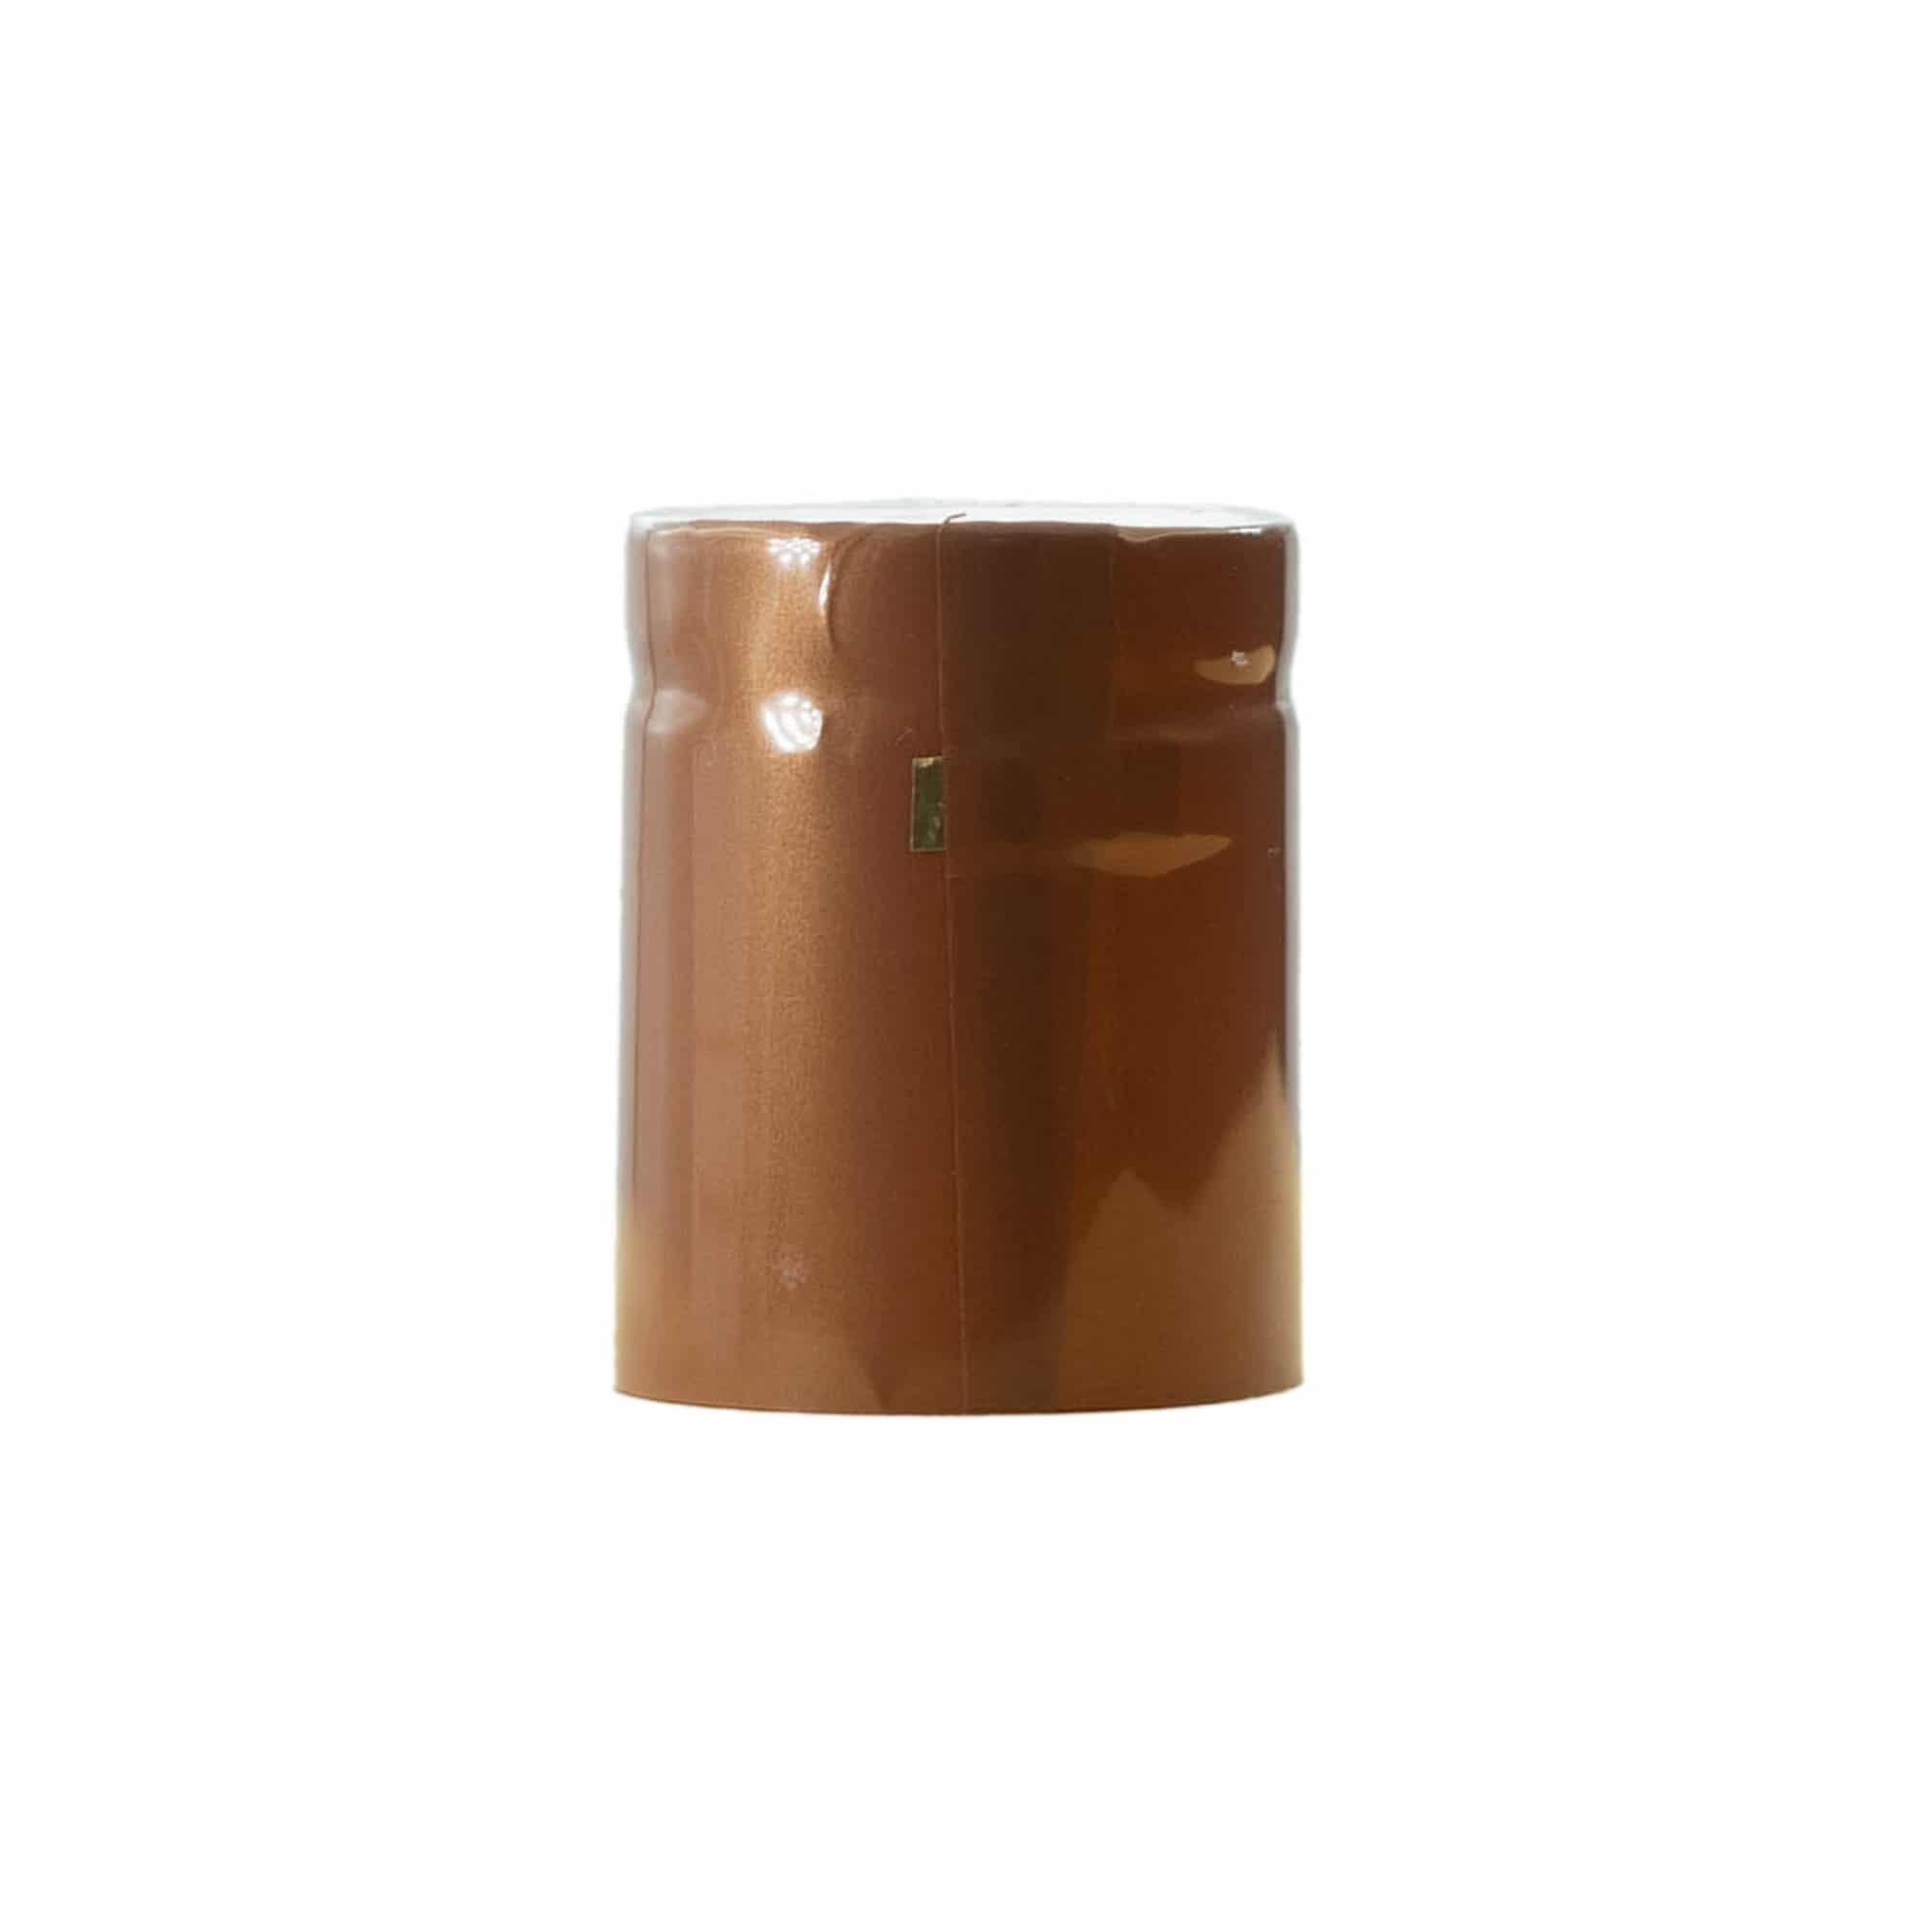 Schrumpfkapsel 32x41, PVC-Kunststoff, bronze